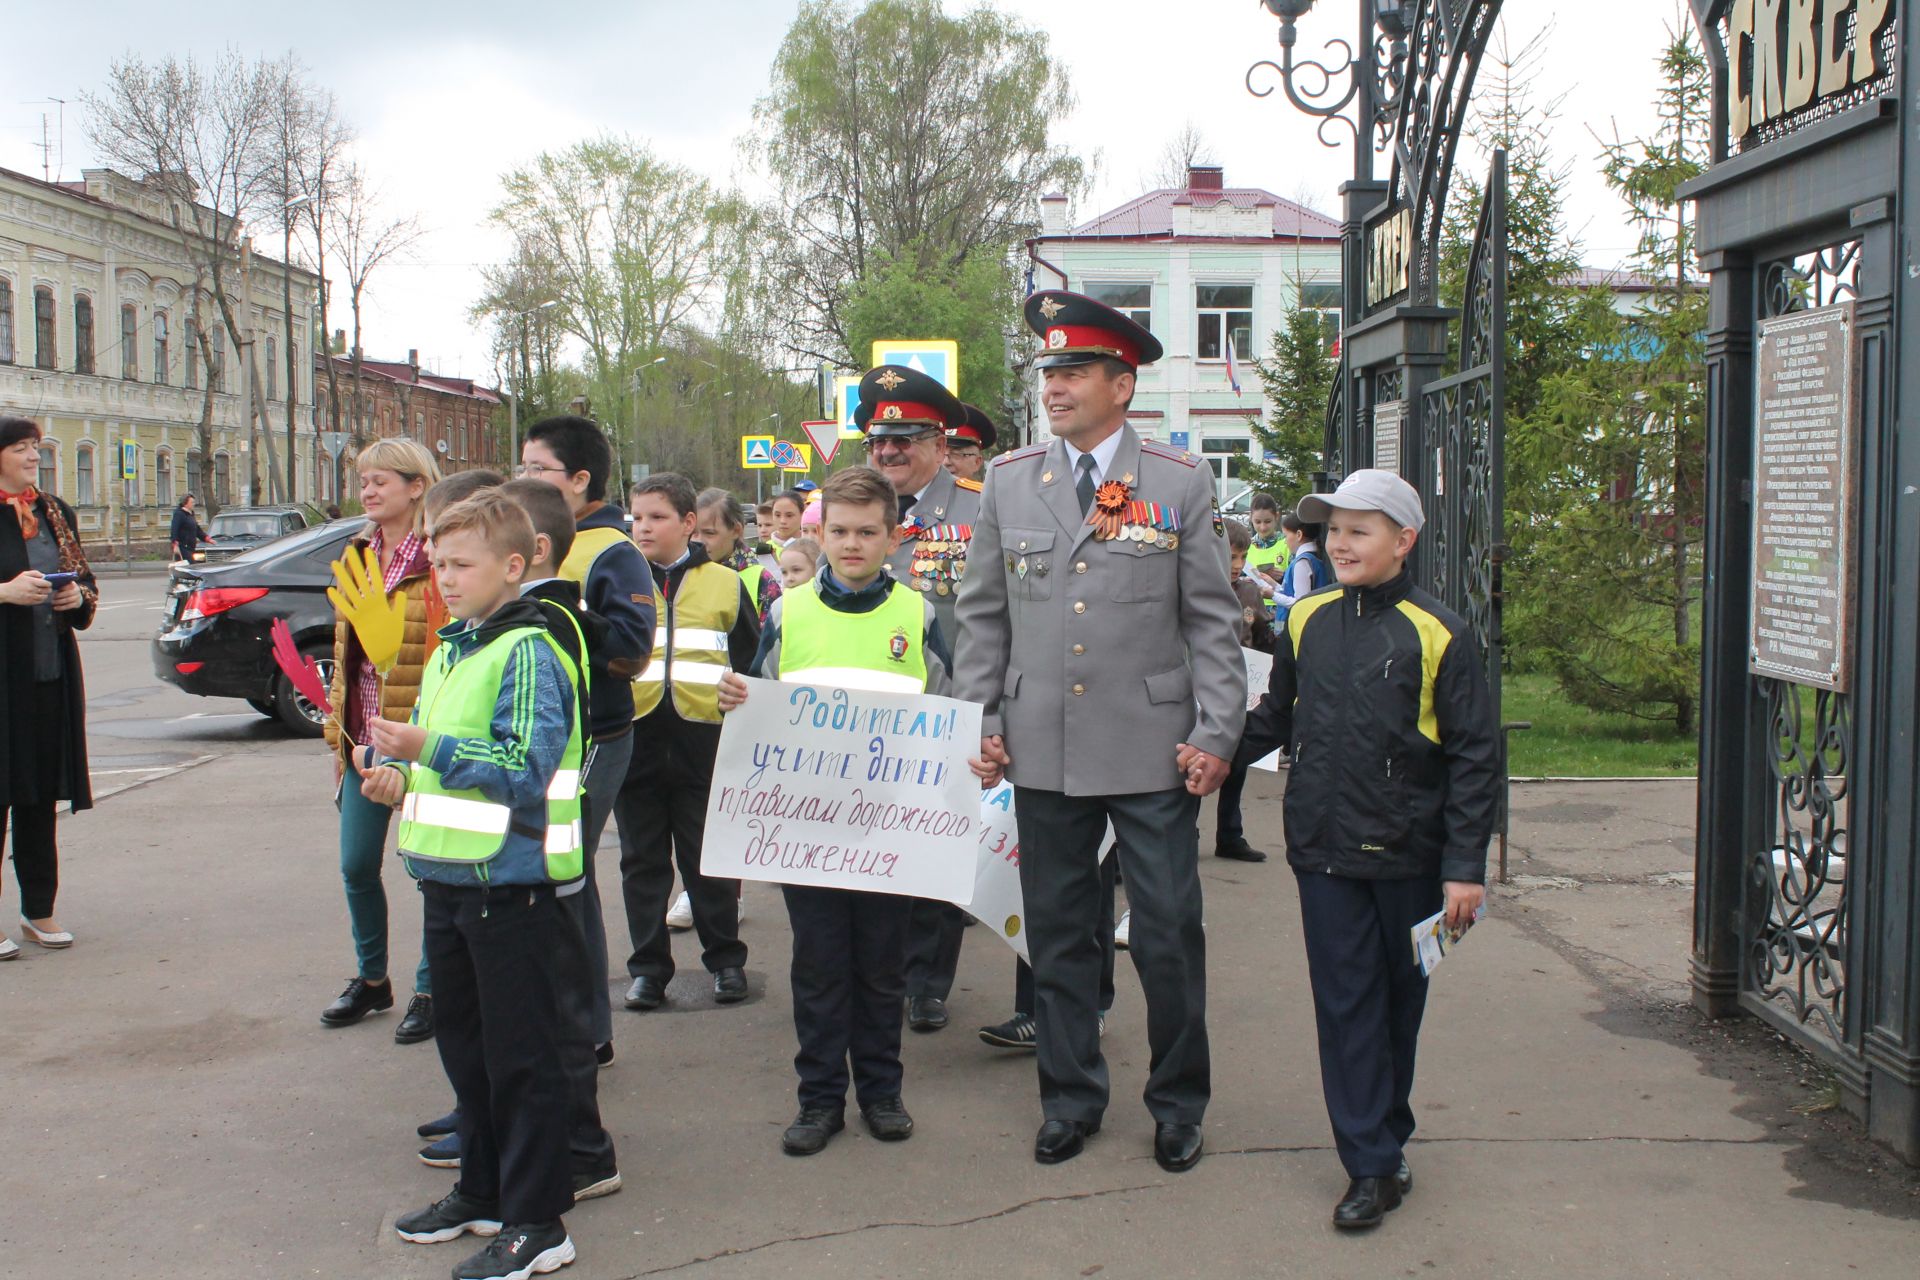 Безопасный переход проезжей части: уроки от ветеранов чистопольской полиции